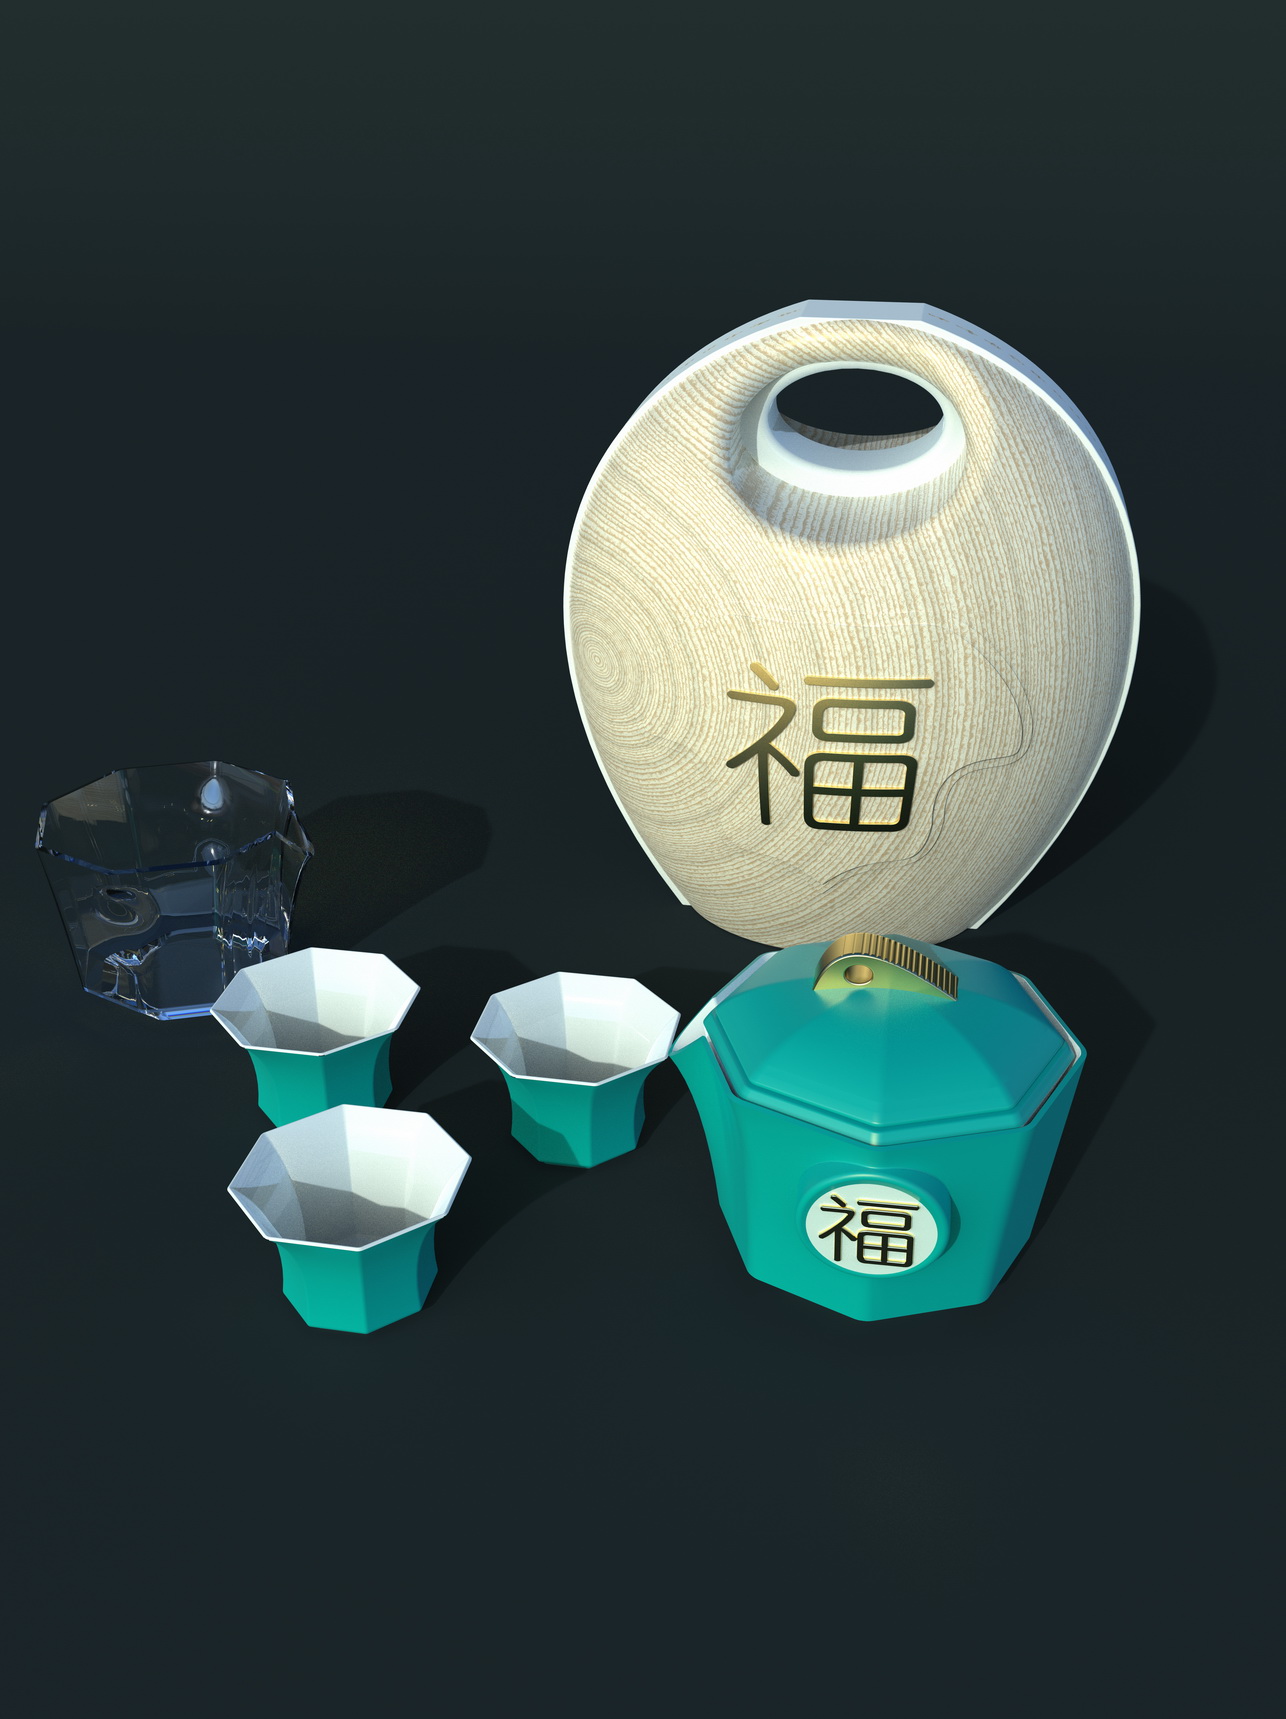 其他竞赛作品——《福祥》陶瓷日用品旅行茶具 设计